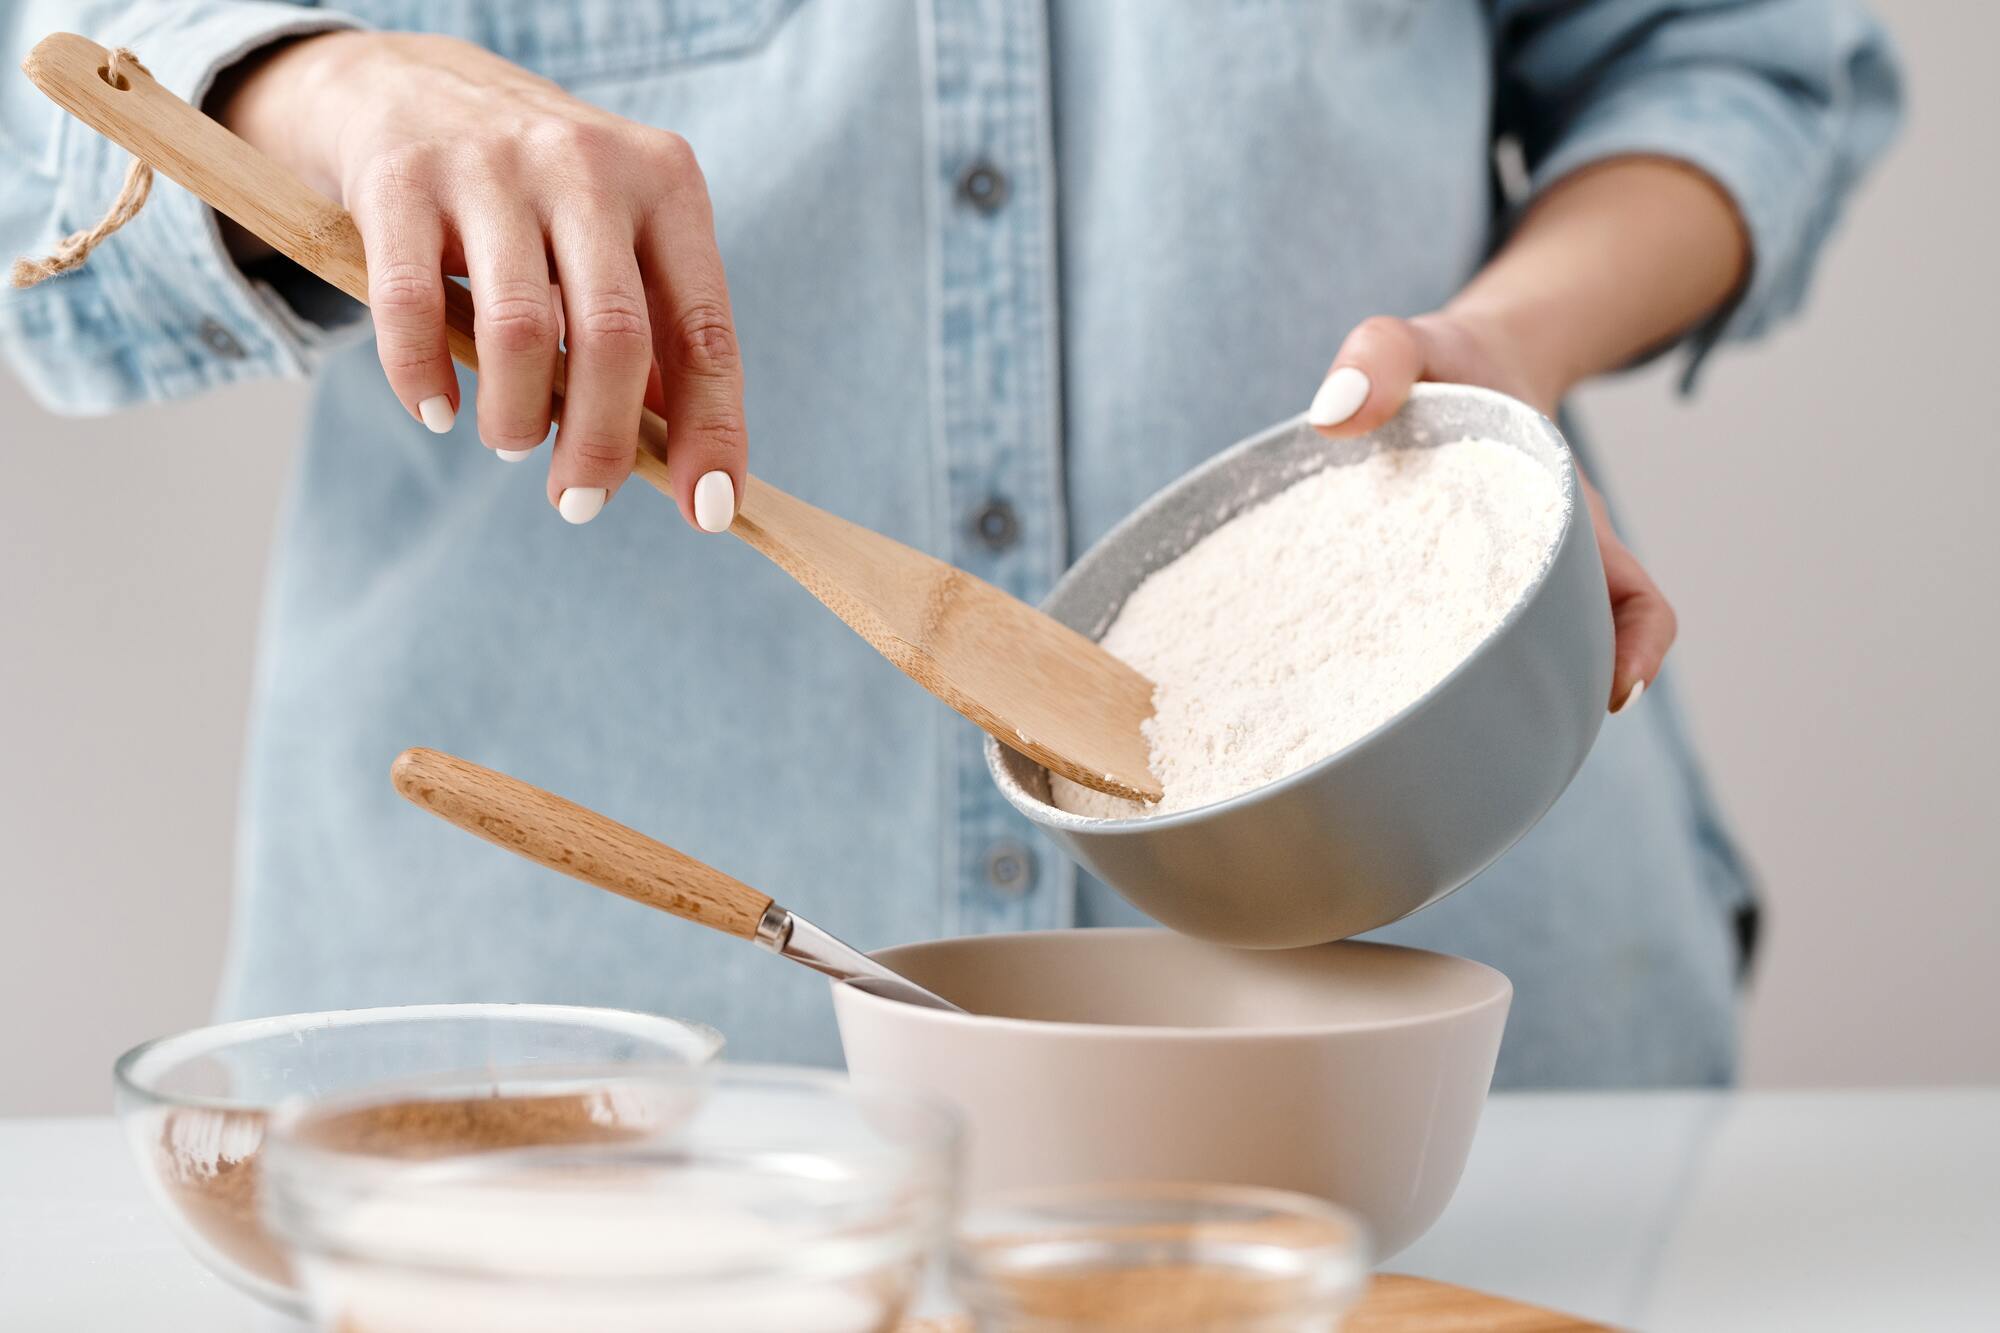 Flour for making baking powder